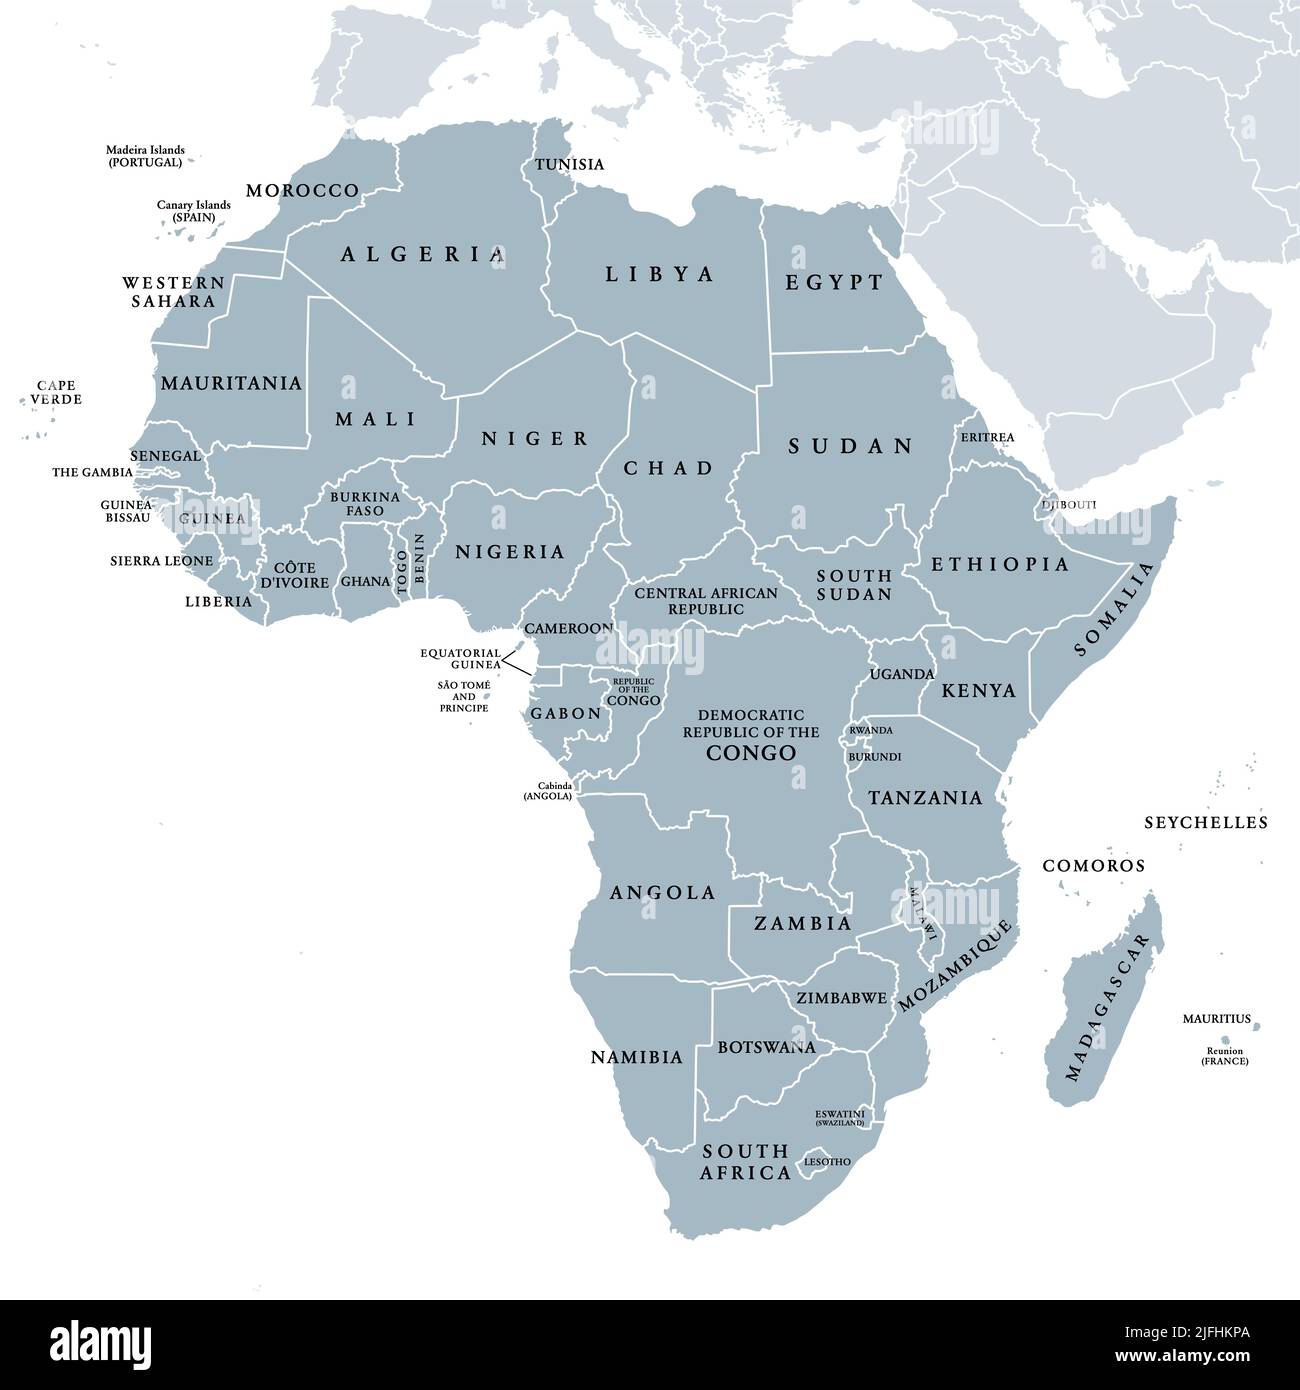 Afrique, pays uniques, carte politique grise. Plus grand continent, dont Madagascar. Avec les noms de pays et les frontières internationales en anglais. Banque D'Images